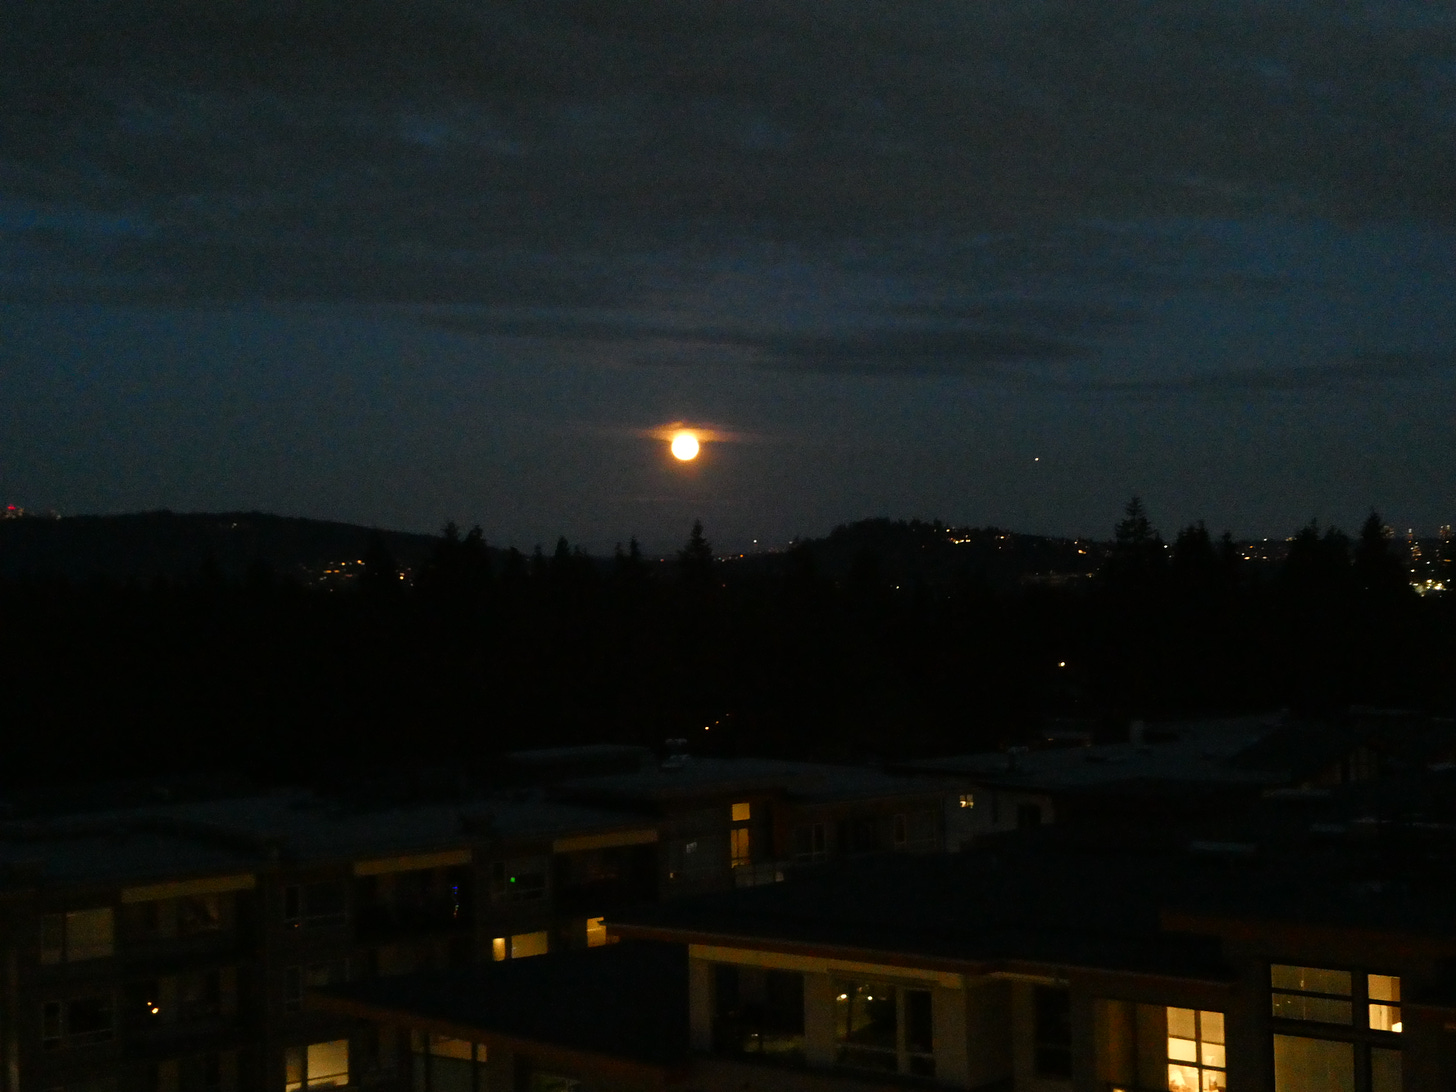 Low and orange moon in dark sky over low buildings.